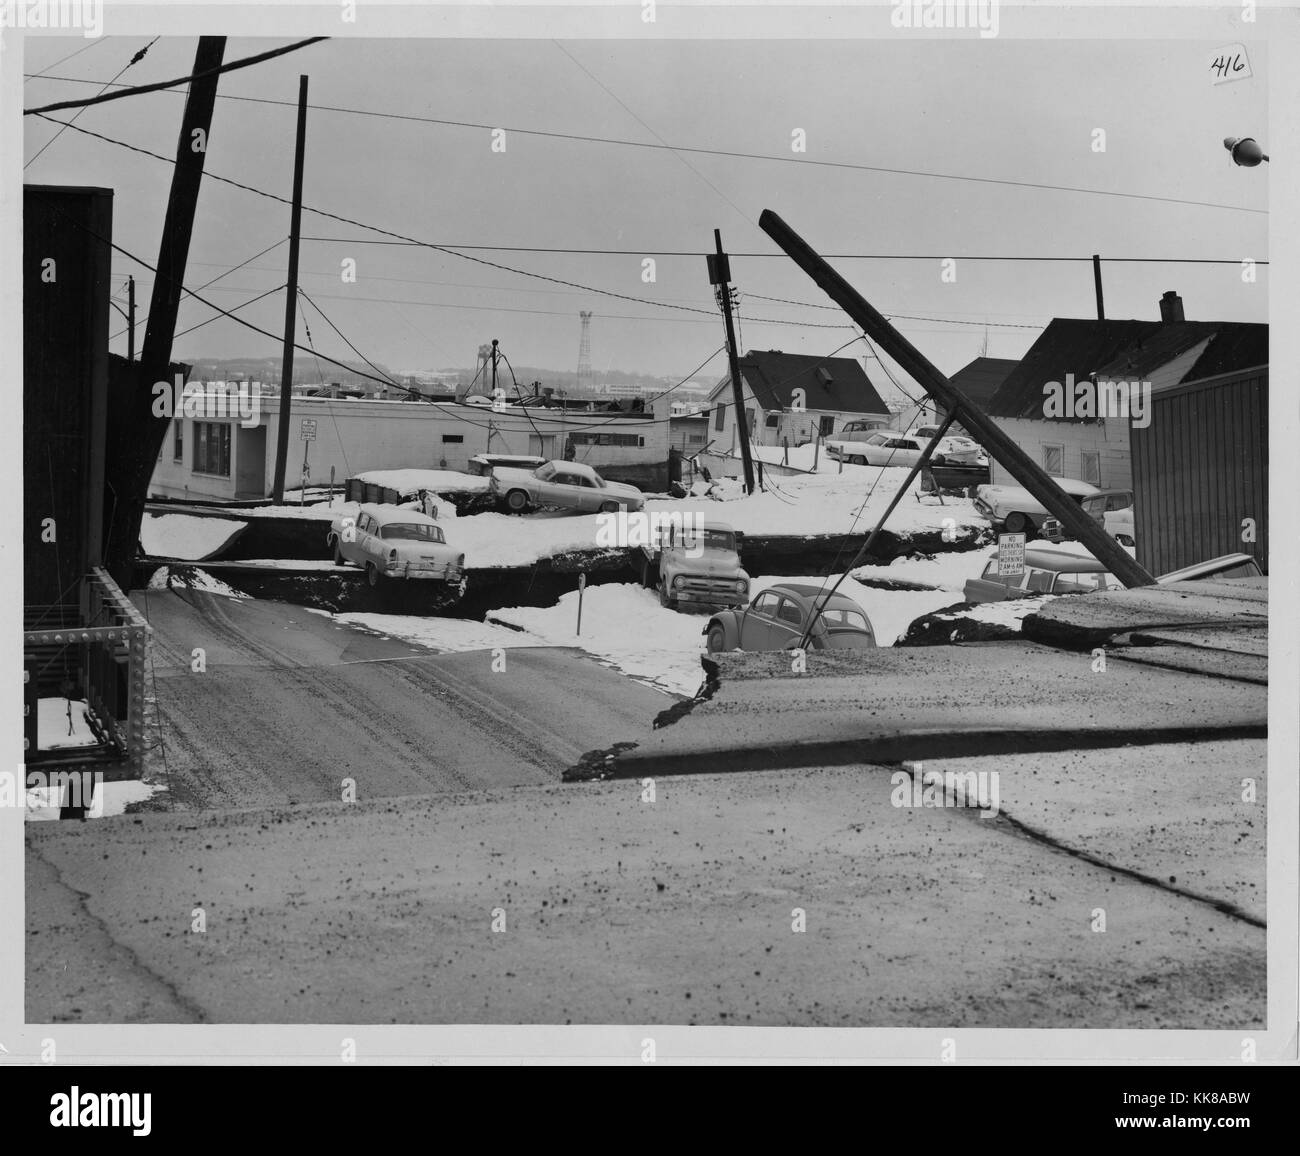 Une photographie montrant la destruction qui s'est produit à Anchorage causé par le séisme de 1964 en Alaska, l'affaissement du sol majeur précédemment laissé un plat de la ville assis à des hauteurs que modifiée par de nombreux pieds, voitures et maisons ont été laissées à des angles différents et de l'altitude par le mouvement de la terre avec des poteaux électriques dans divers états de l'effondrement, le tremblement de terre de magnitude 92 trouve son origine dans le Prince William Sound et est le deuxième plus important séisme jamais enregistré, Anchorage, Alaska, Alasaka, 1964. Banque D'Images